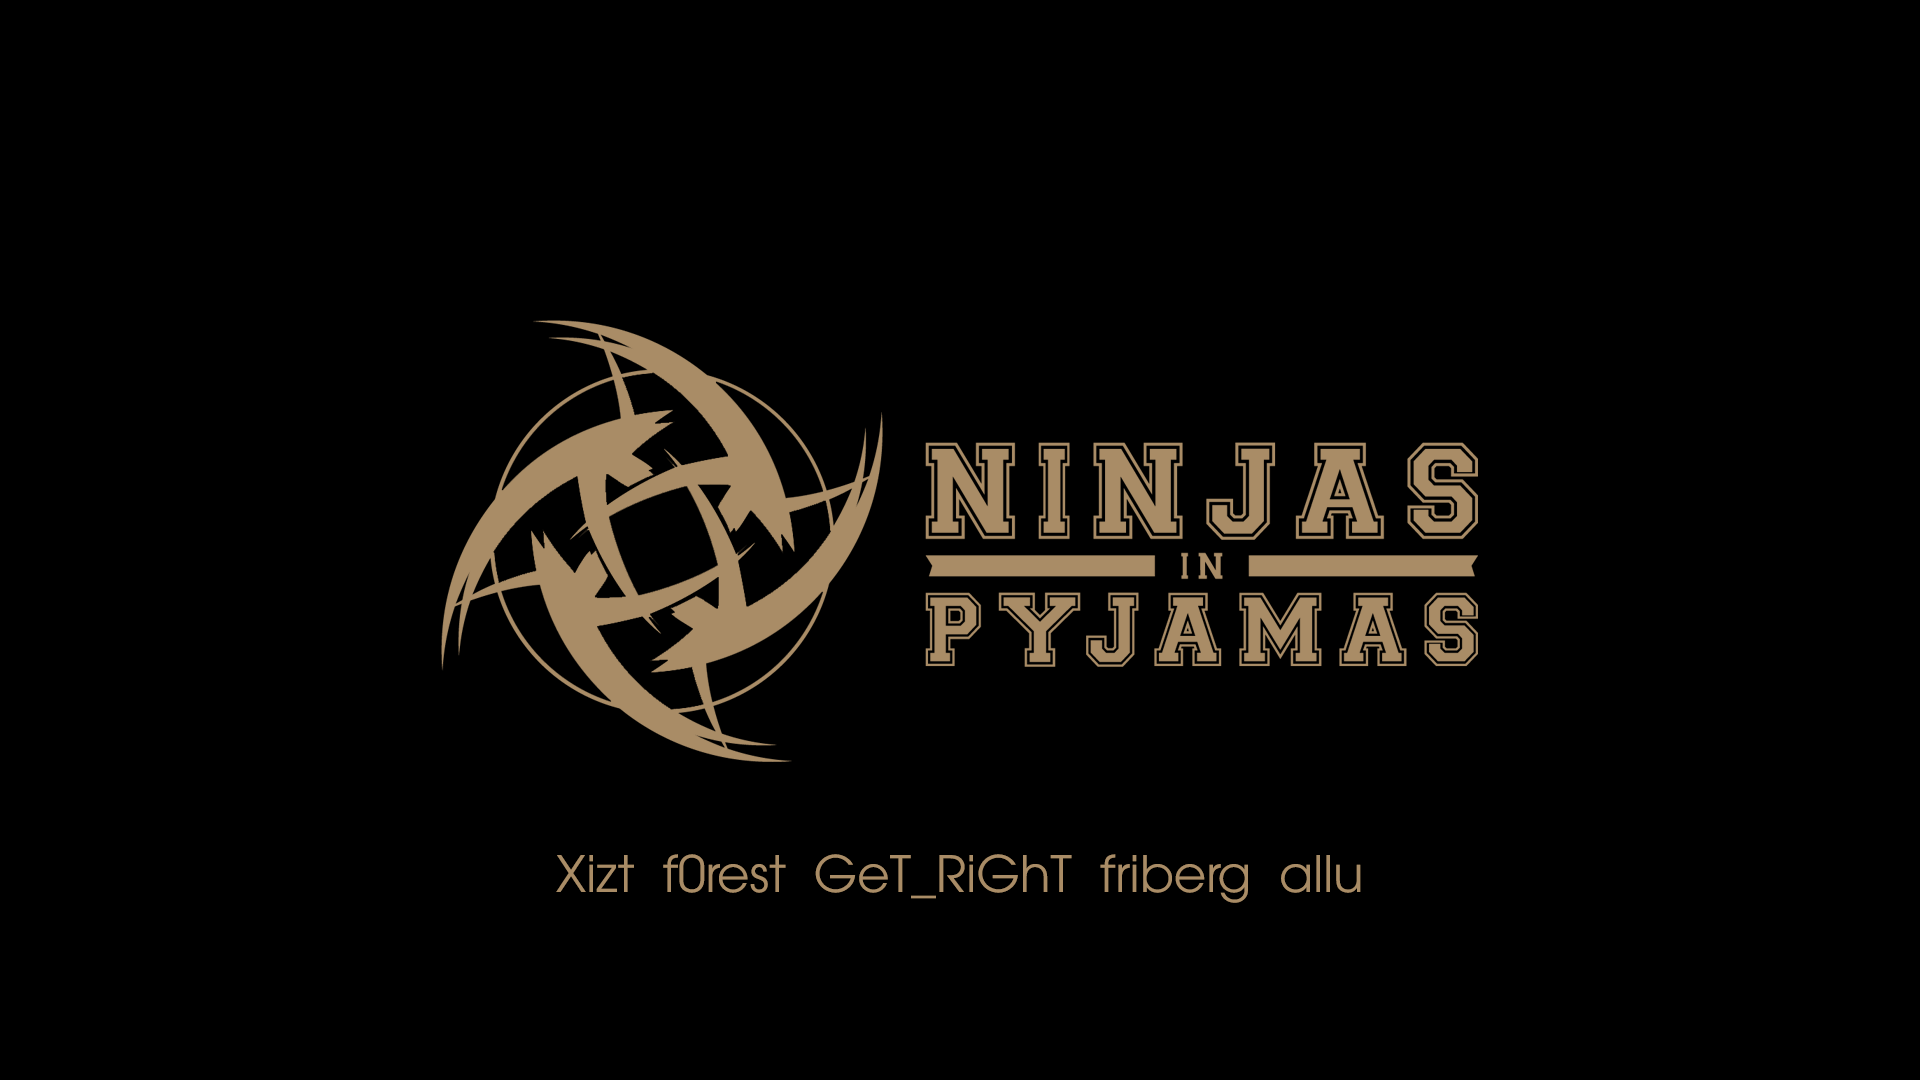 Ninjas In Pyjamas Black Gold. CS:GO Wallpaper And Background